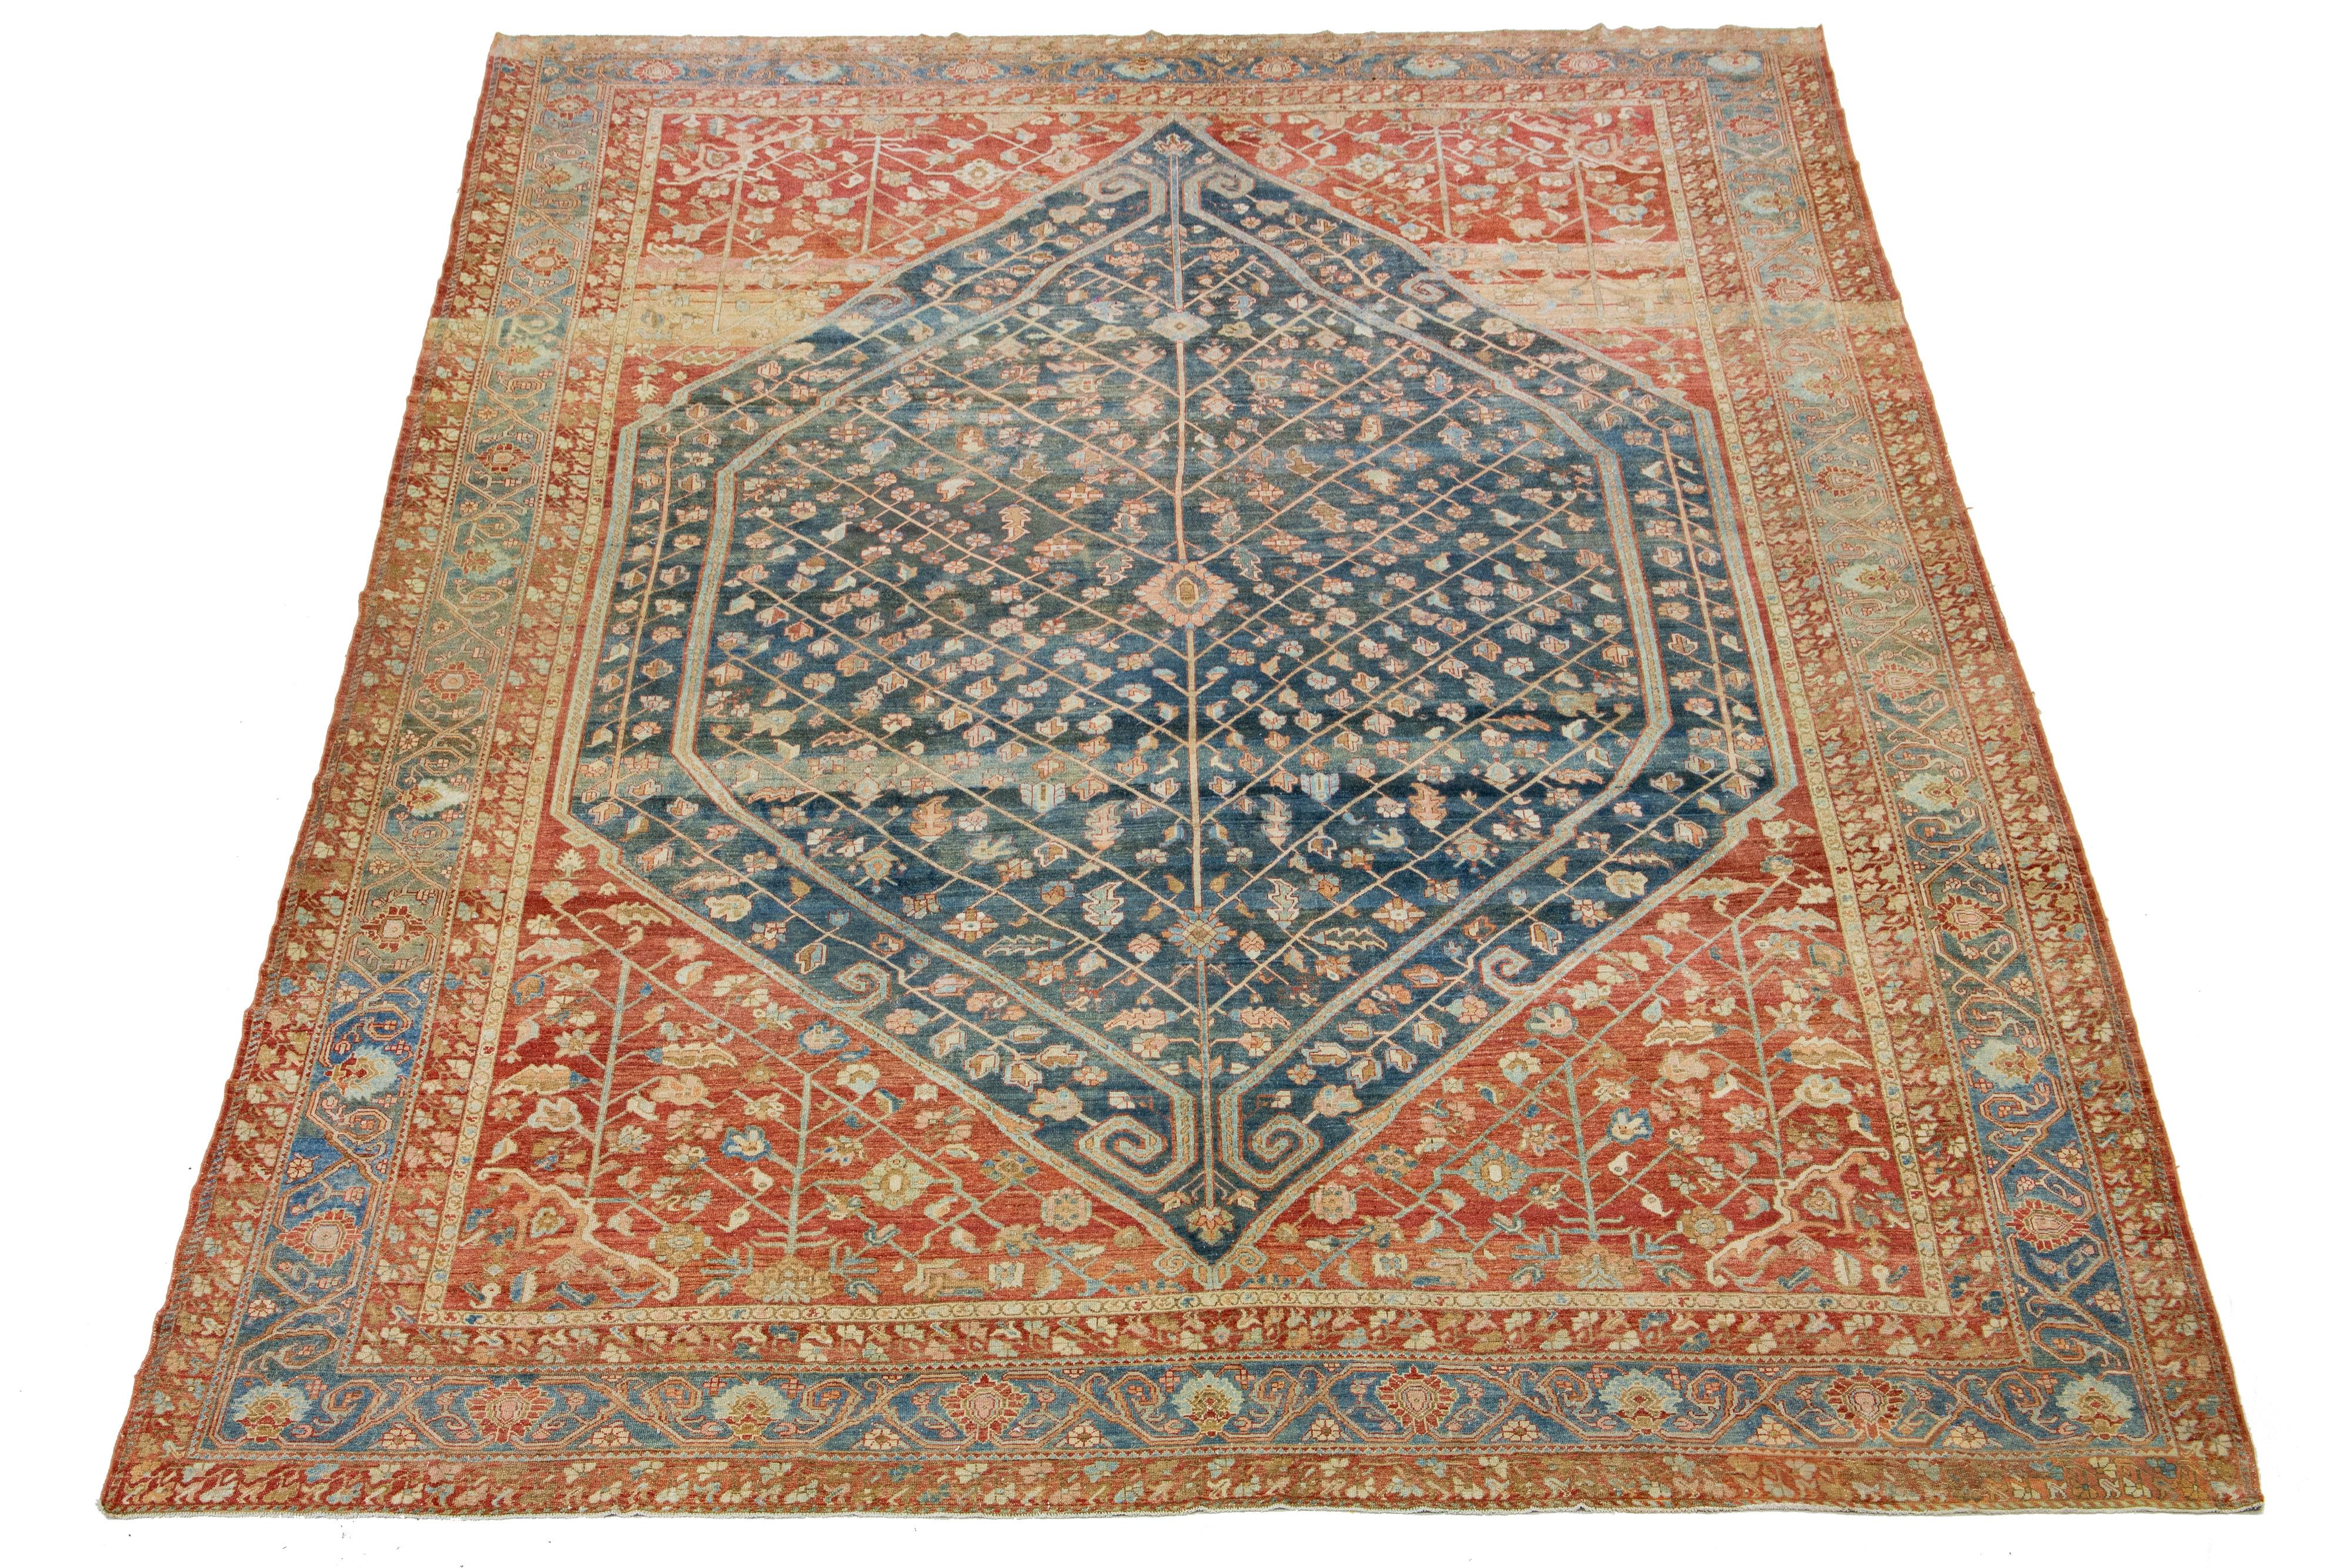 Schöne antike Bachtiari handgeknüpften Wollteppich mit einem blauen Farbfeld. Dieses persische Stück hat ein klassisches geometrisches Blumenmuster in rostroten und pfirsichfarbenen Tönen.

Dieser Teppich misst 14'9